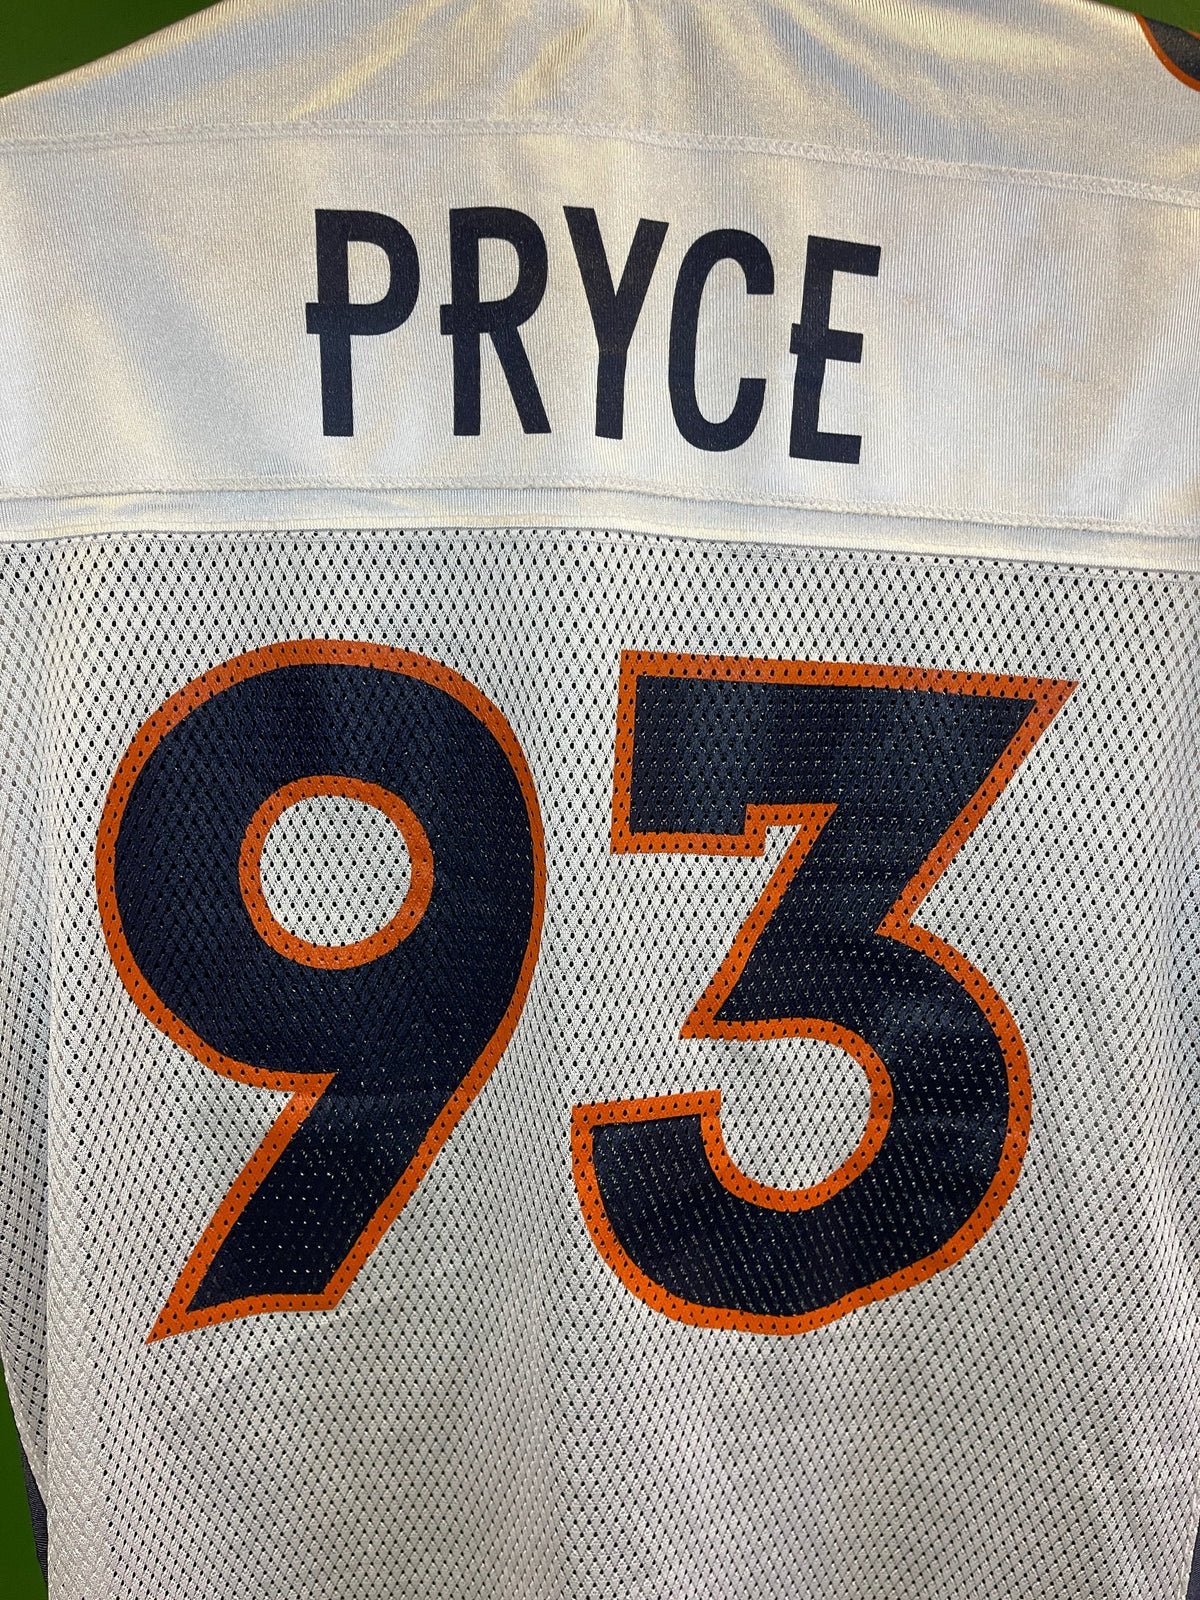 NFL Denver Broncos Trevor Pryce #93 White Jersey Men's Large